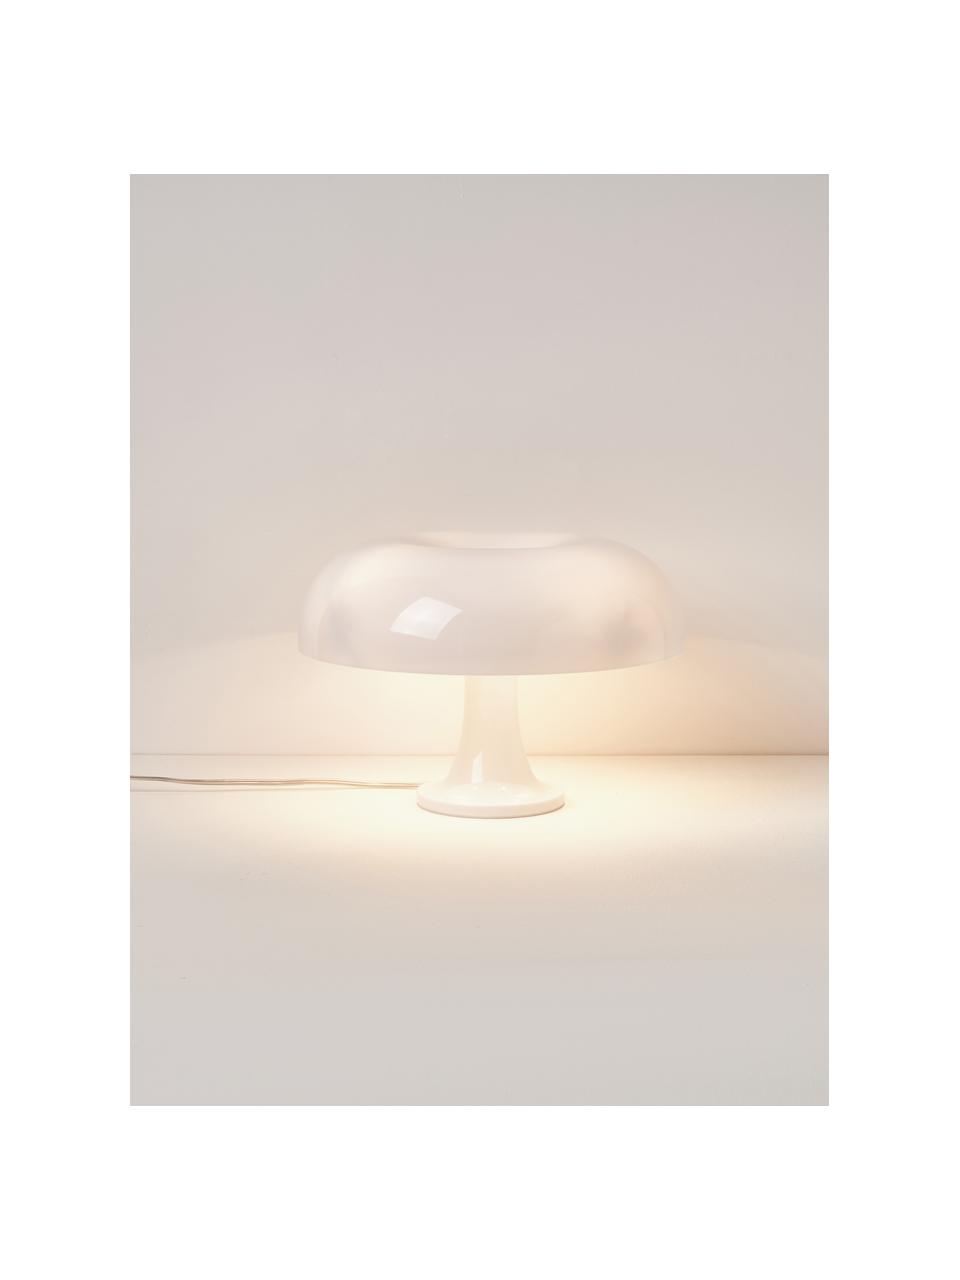 Tischlampe Nessino, Weiss, Ø 32 x H 22 cm